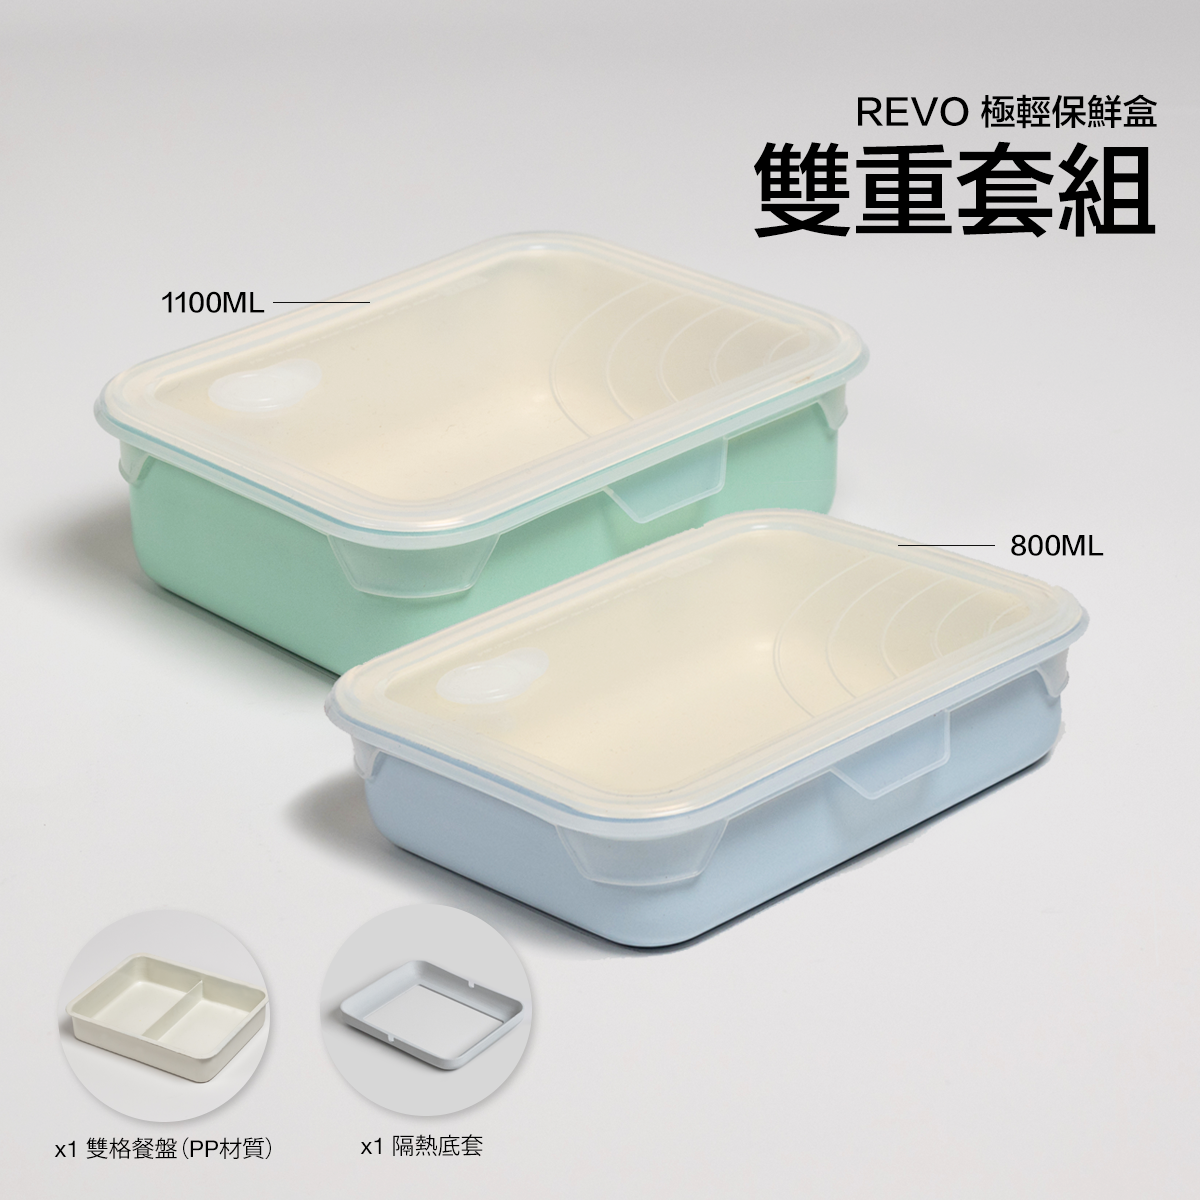 雙重套組 - Revo 極輕保鮮盒